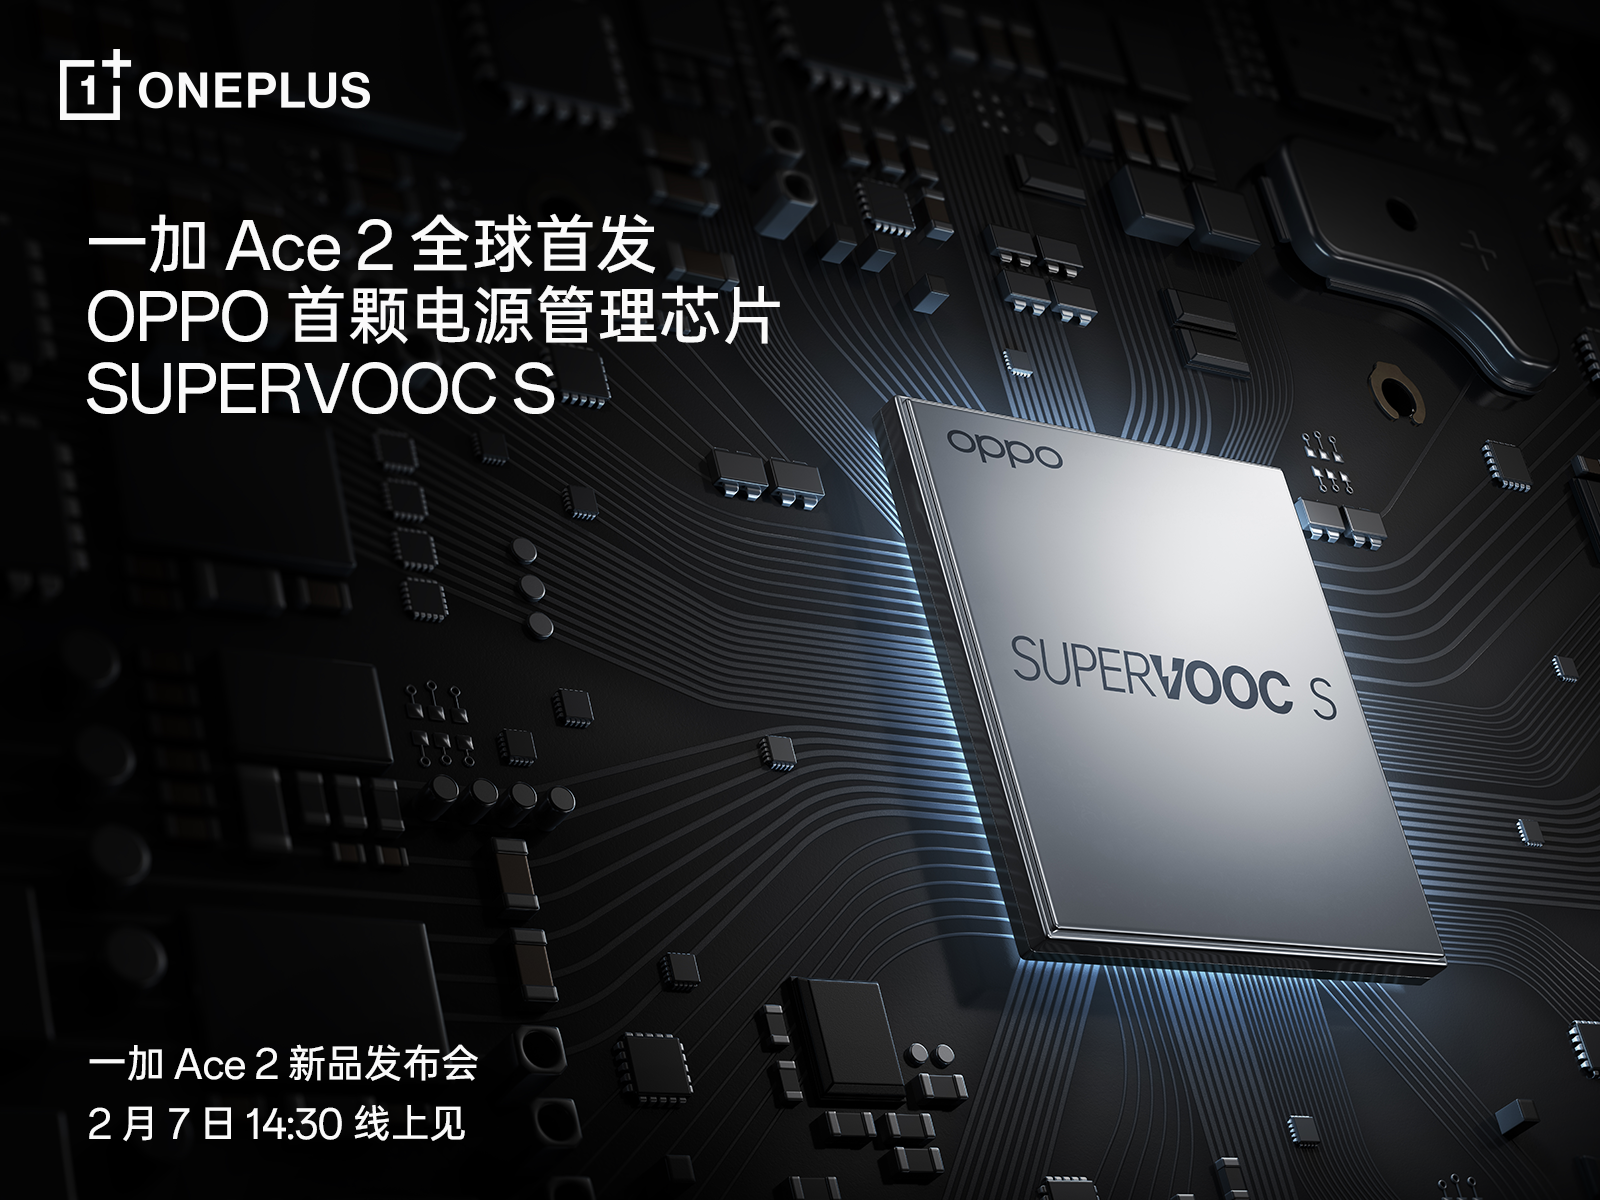 全球首发电源管理芯片SUPERVOOC S，一加 Ace 2带来全新充放电体验(全球电源管理芯片公司排名)